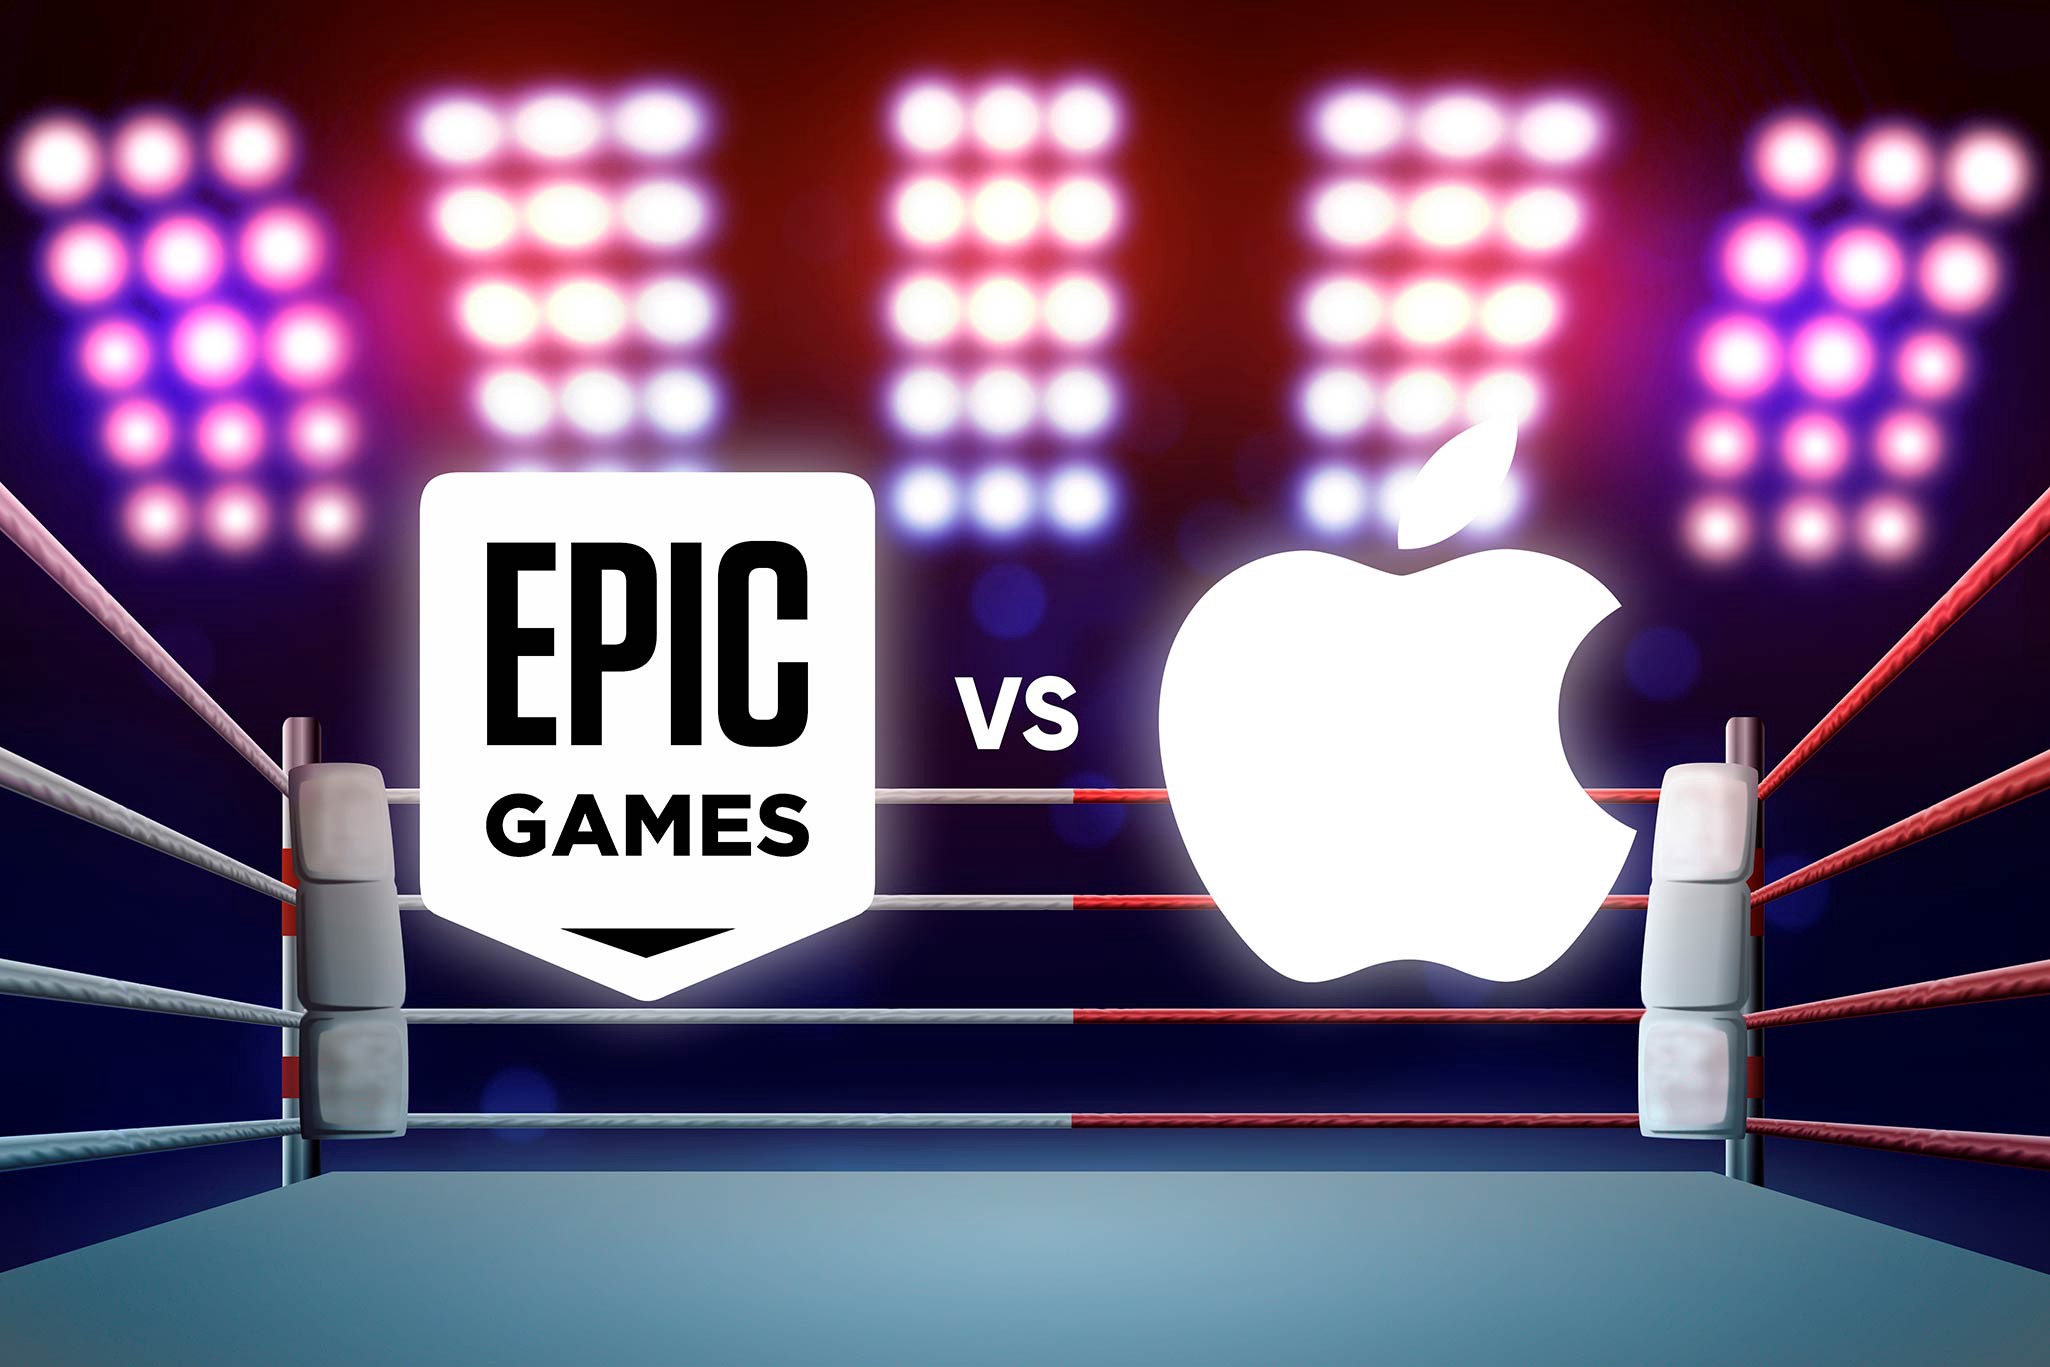 Sąd wyrównał rachunki w sprawie Epic Games przeciwko Apple: Zezwolenie na metody płatności innych firm w App Store i wysoka grzywna dla Epic Games